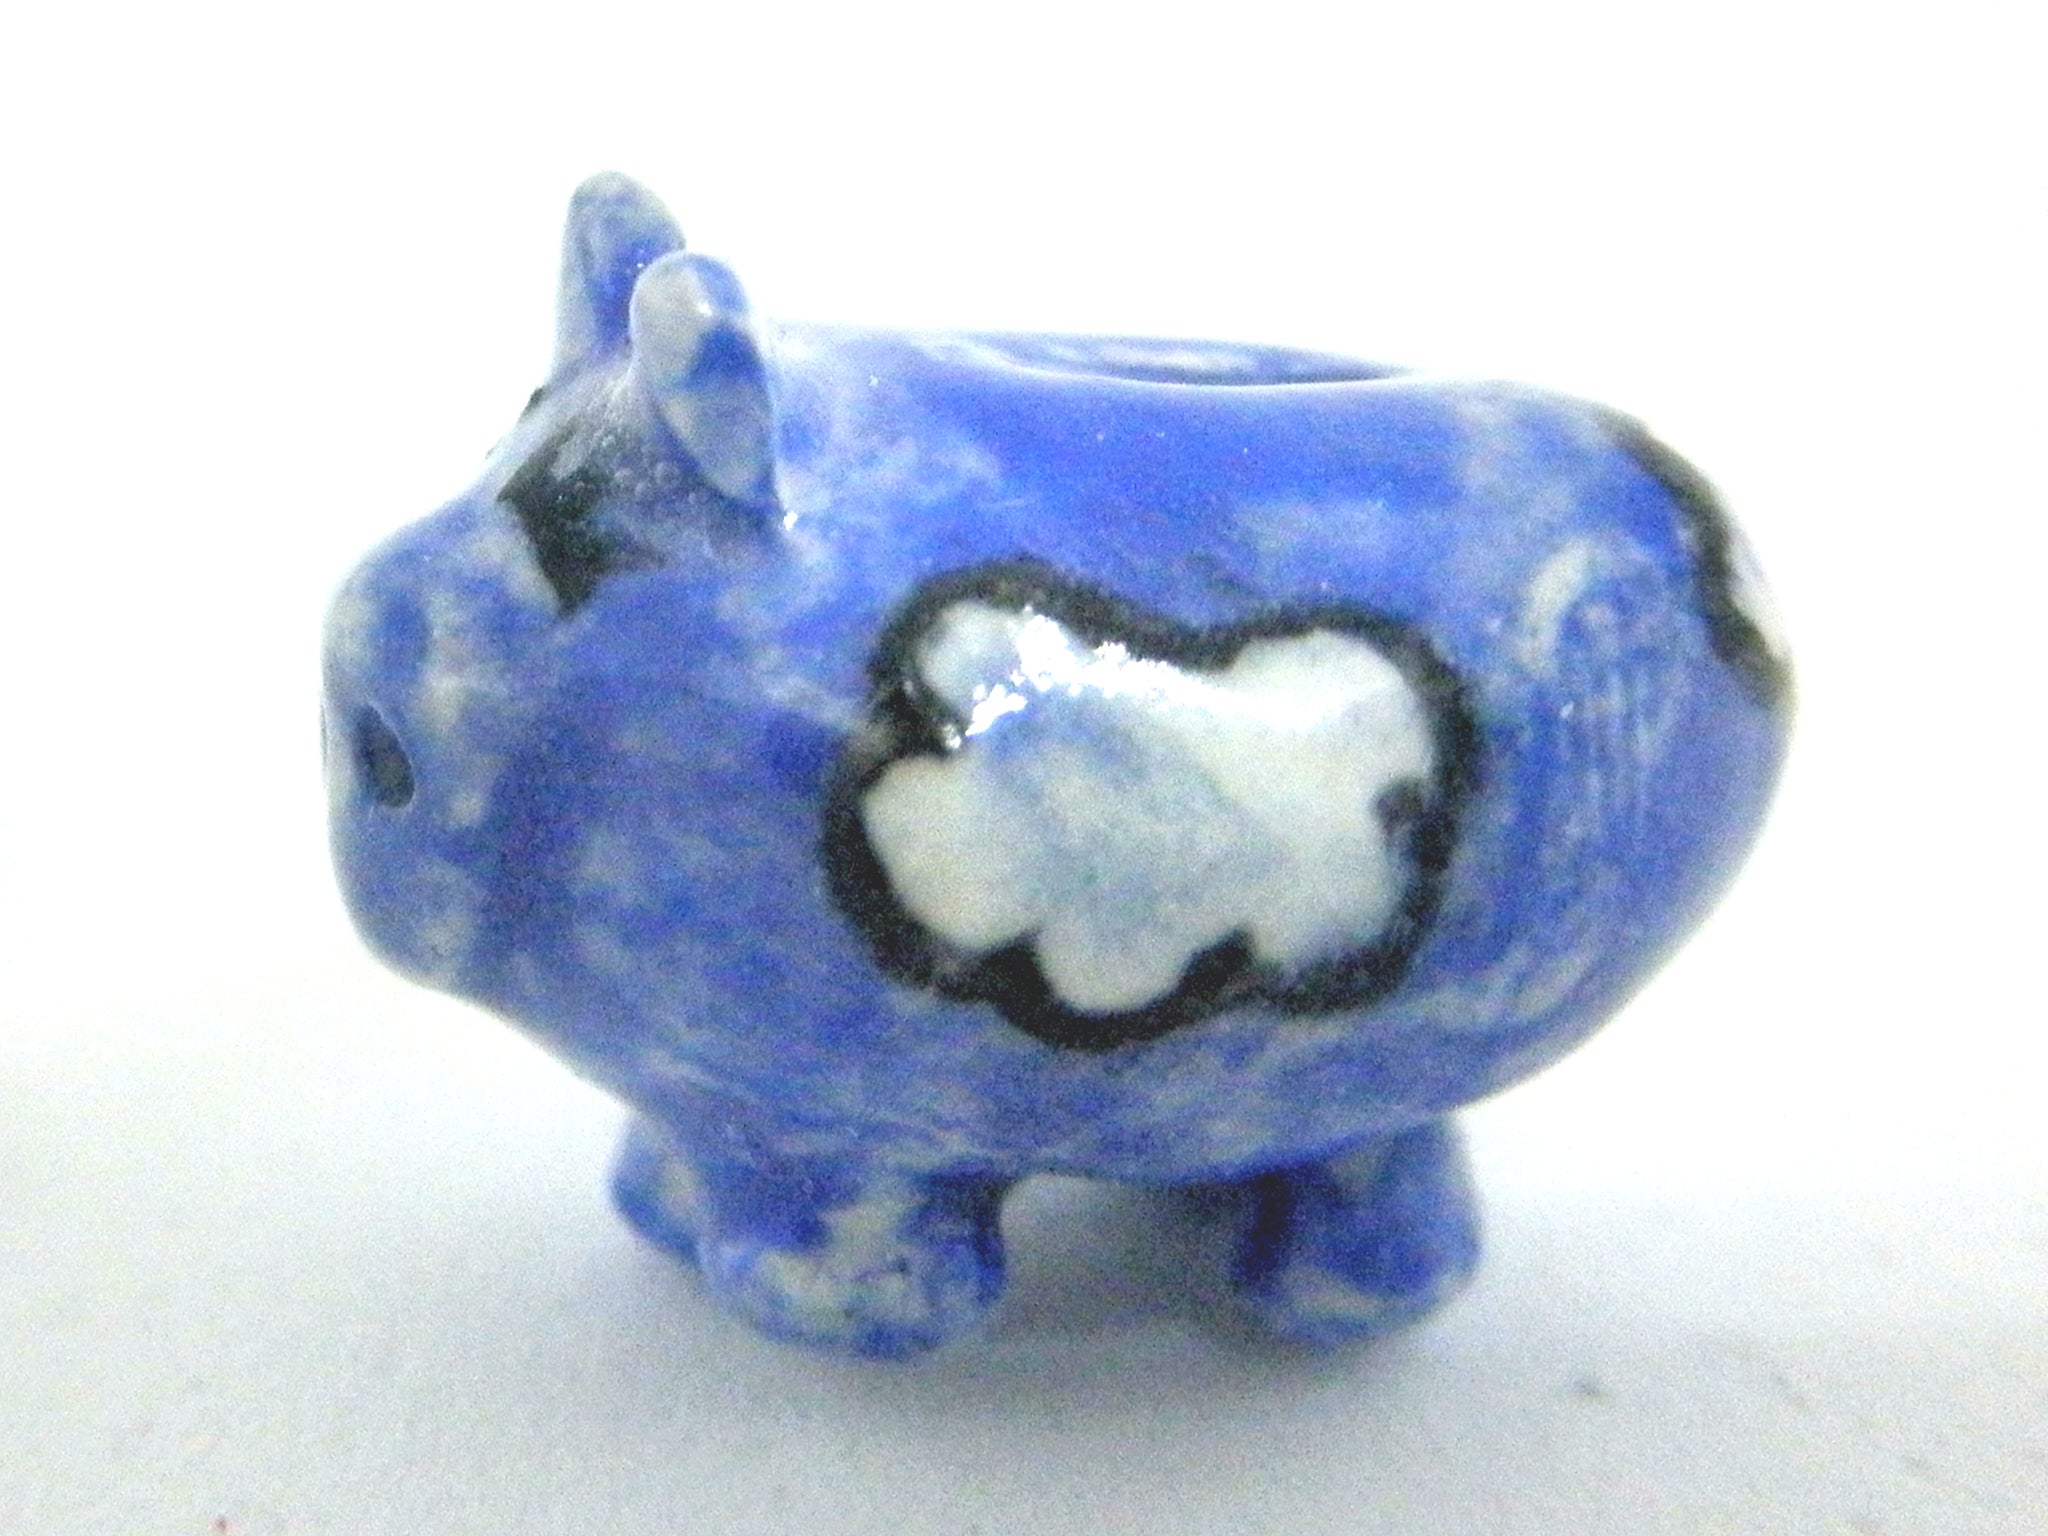 Miniature ceramic piggy bank - blue with clouds